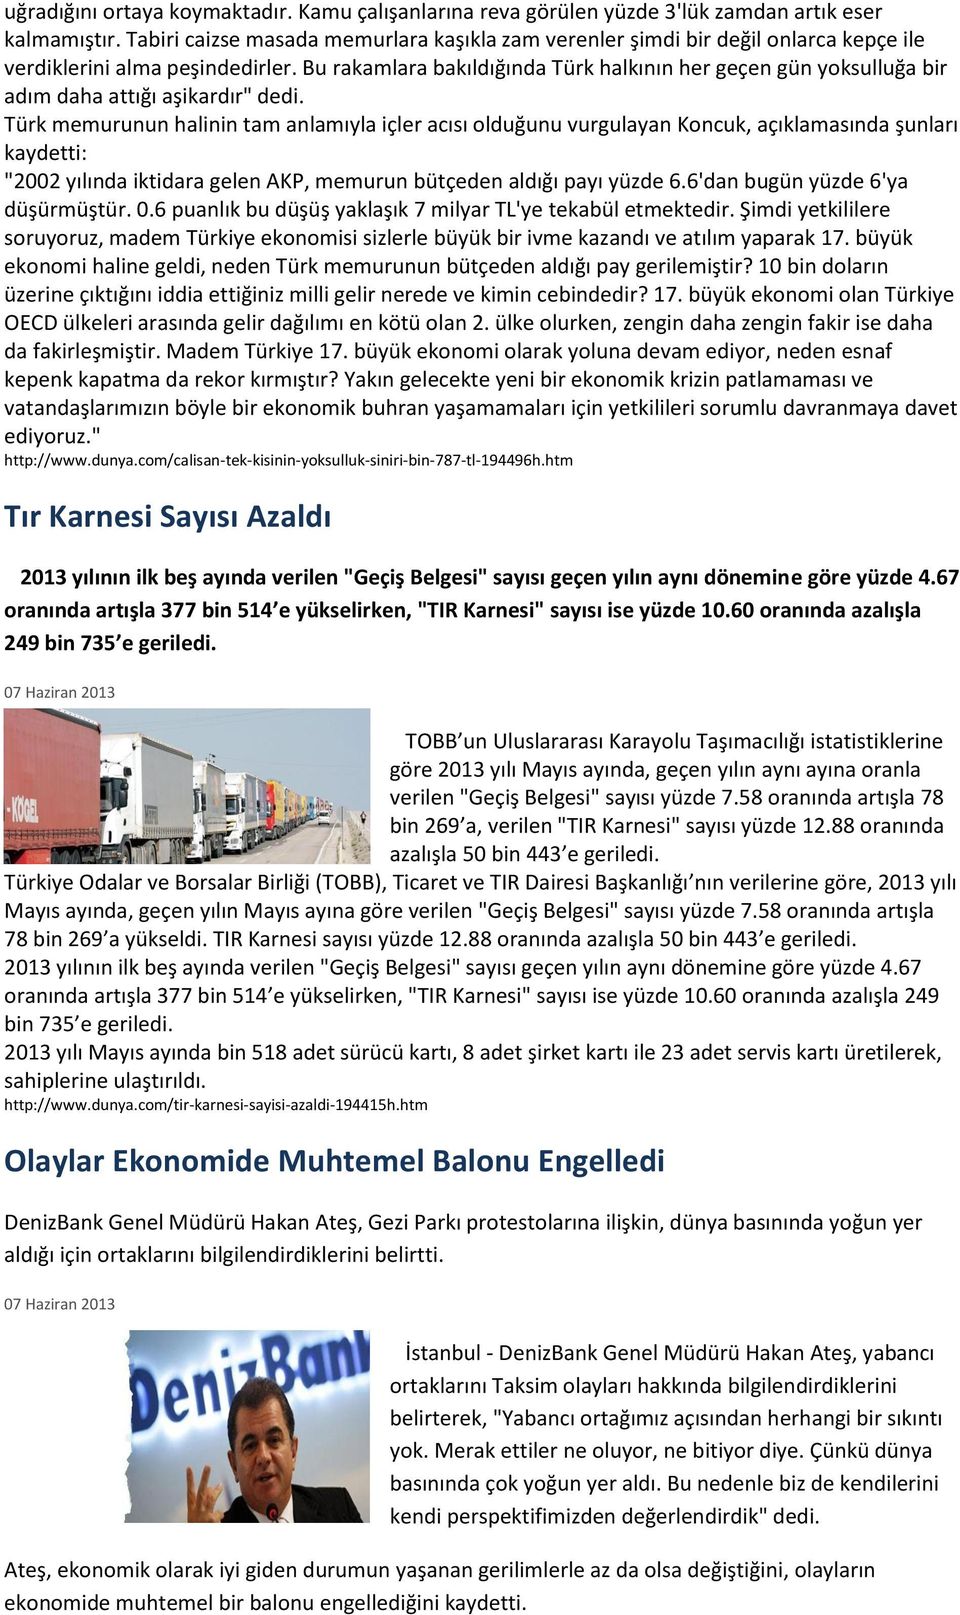 Bu rakamlara bakıldığında Türk halkının her geçen gün yoksulluğa bir adım daha attığı aşikardır" dedi.